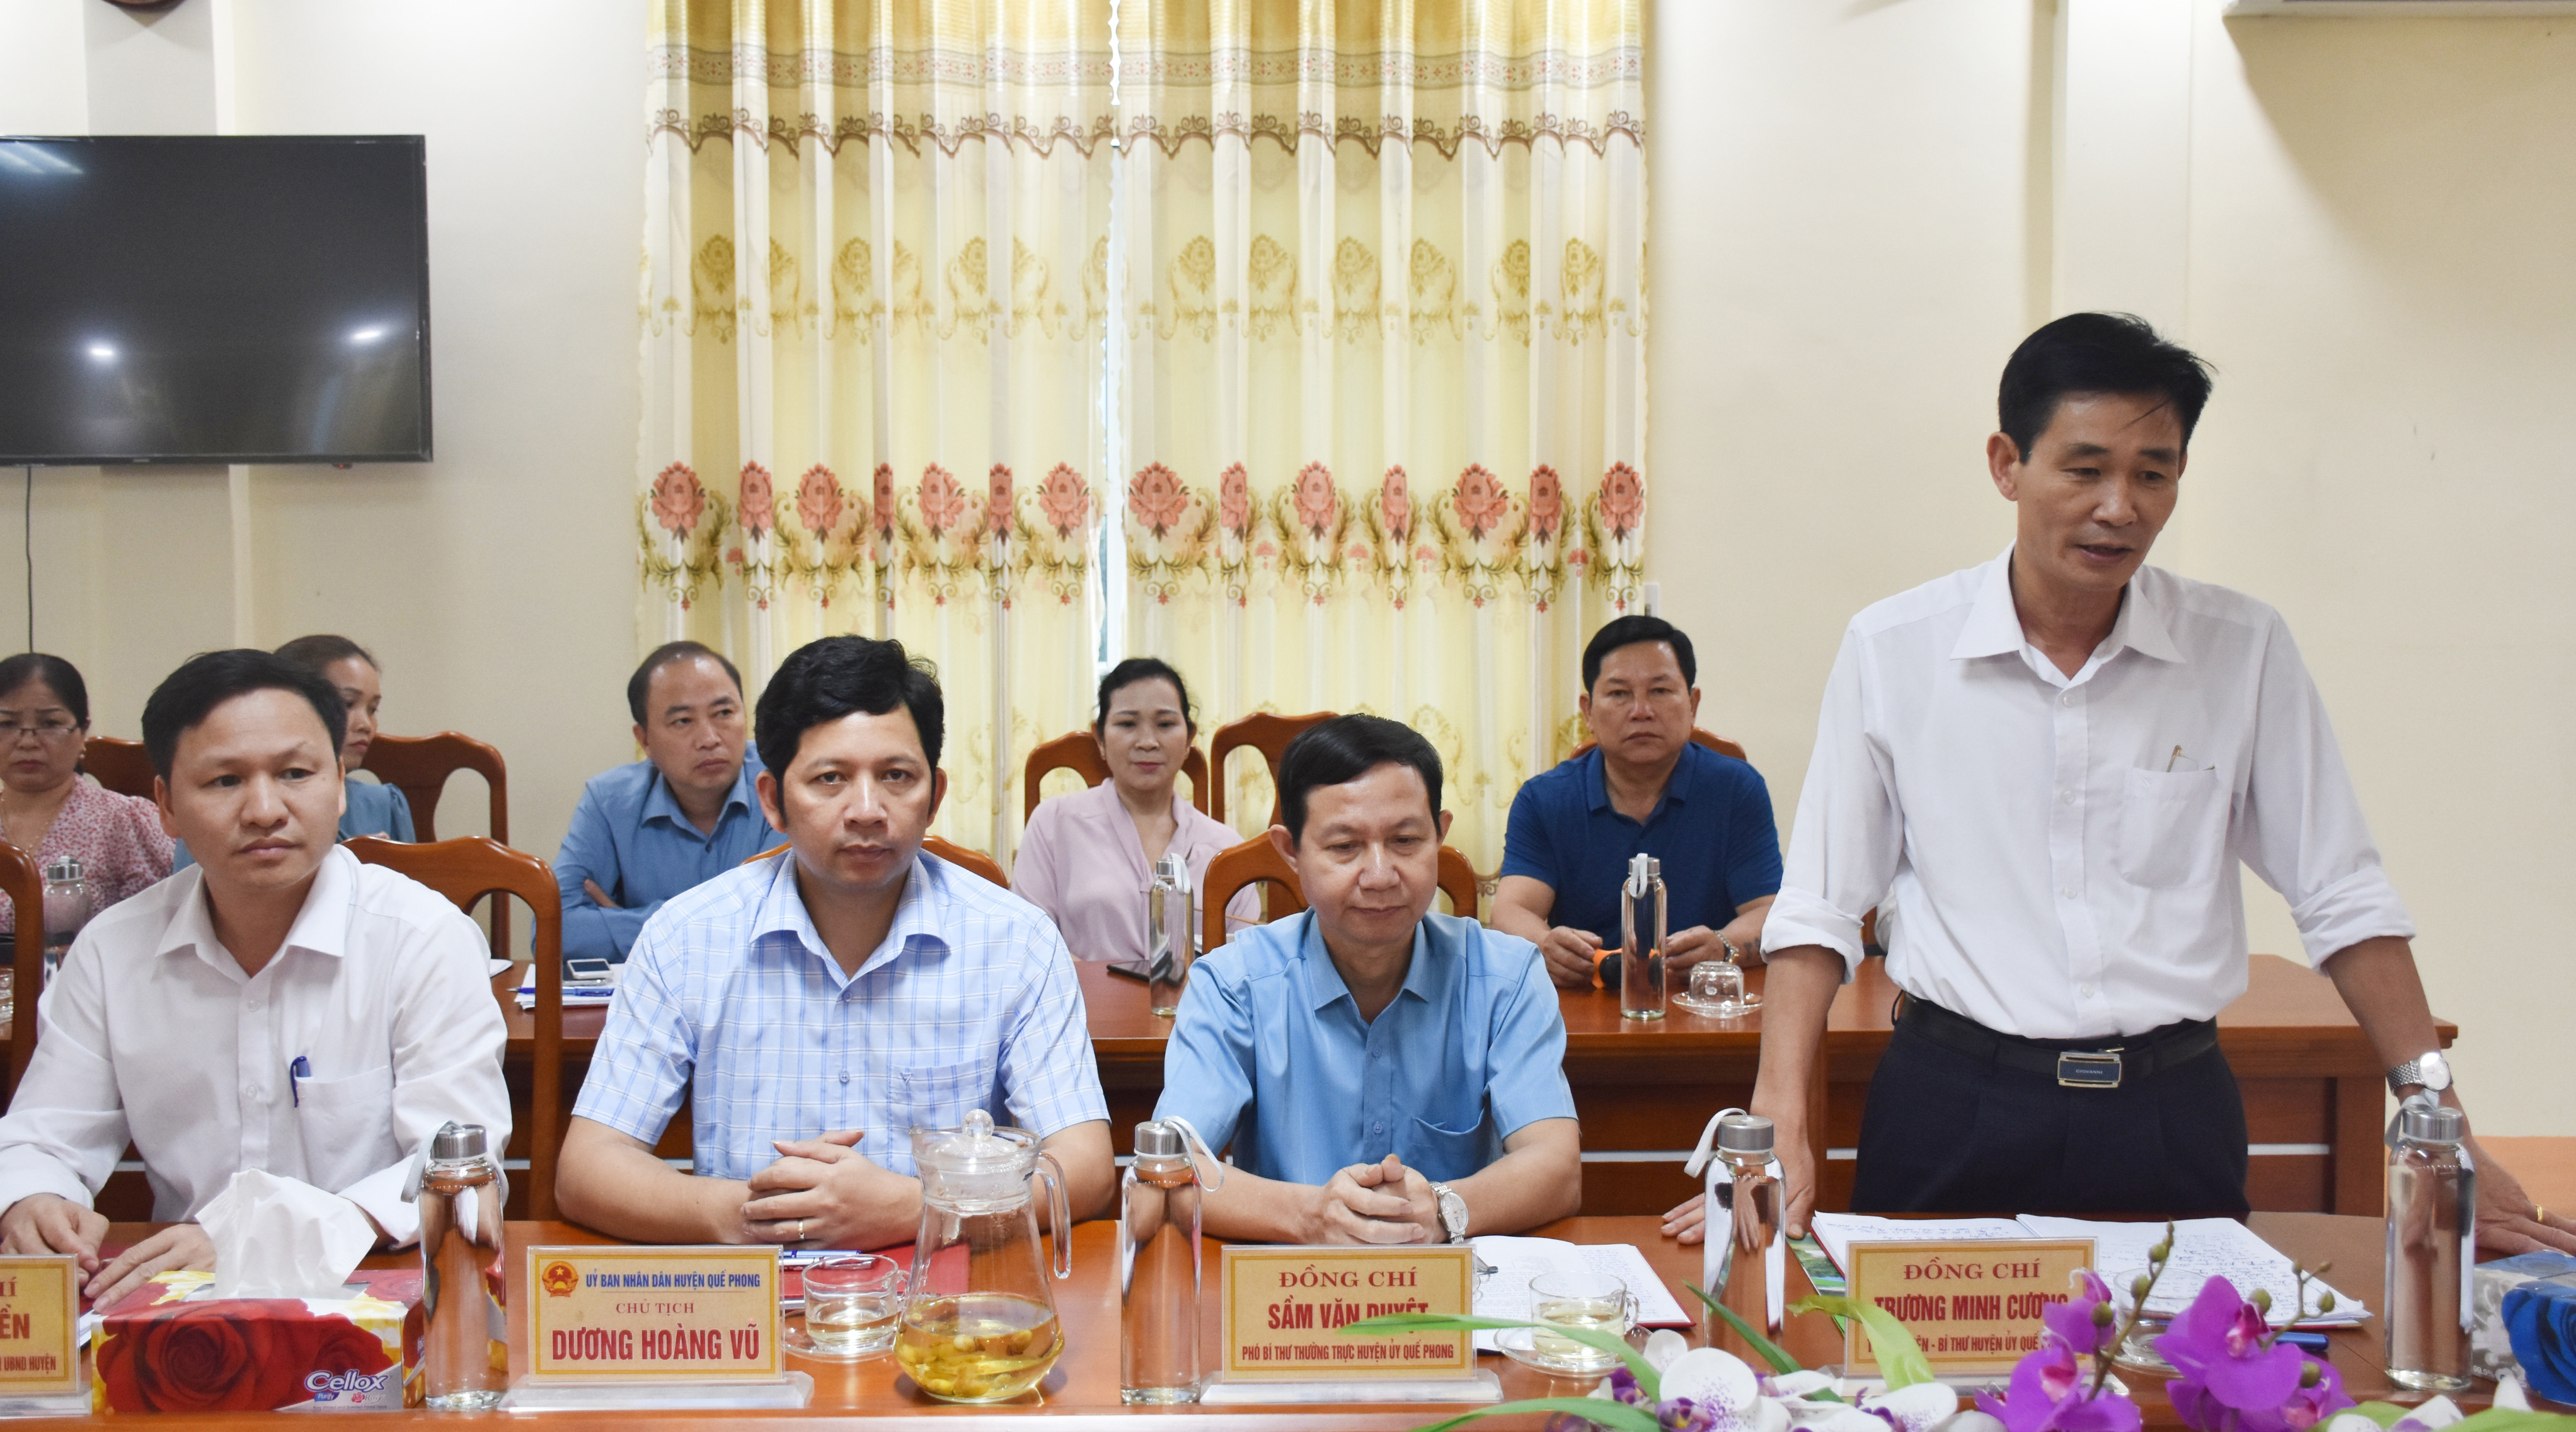 Bí thuư Huyện ủy Quế Phong Lê Minh Cương báo cáo công tác bầu cử của huyện. Ảnh: Thanh Lê